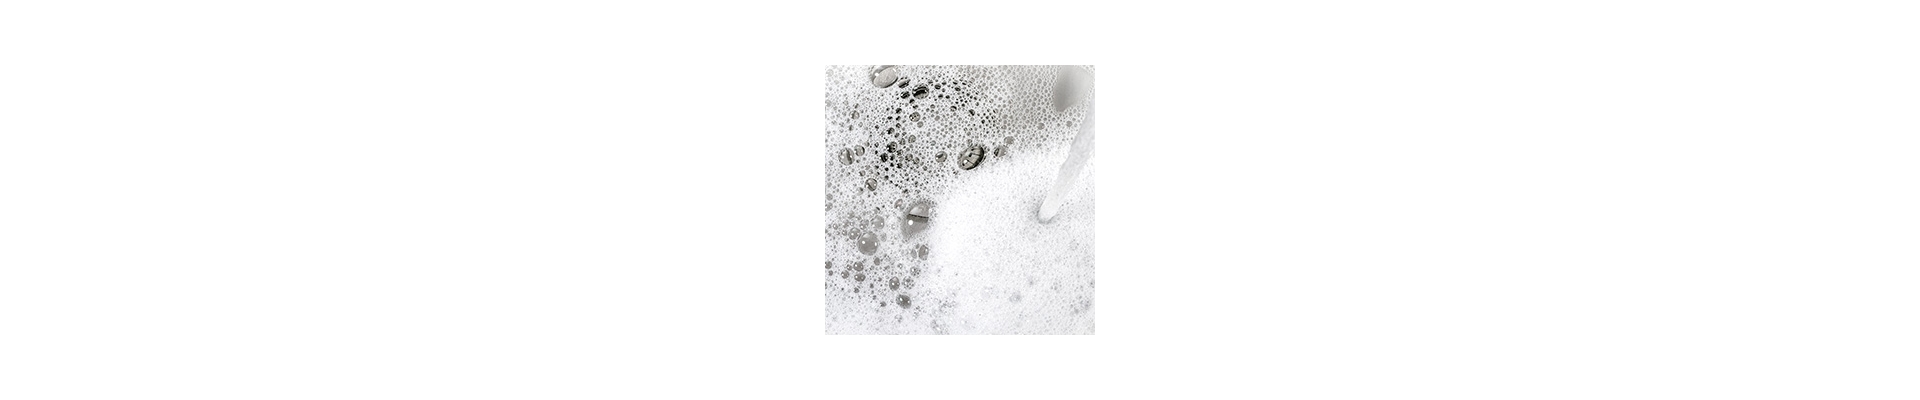 Surfactants | The Soap Kitchen™